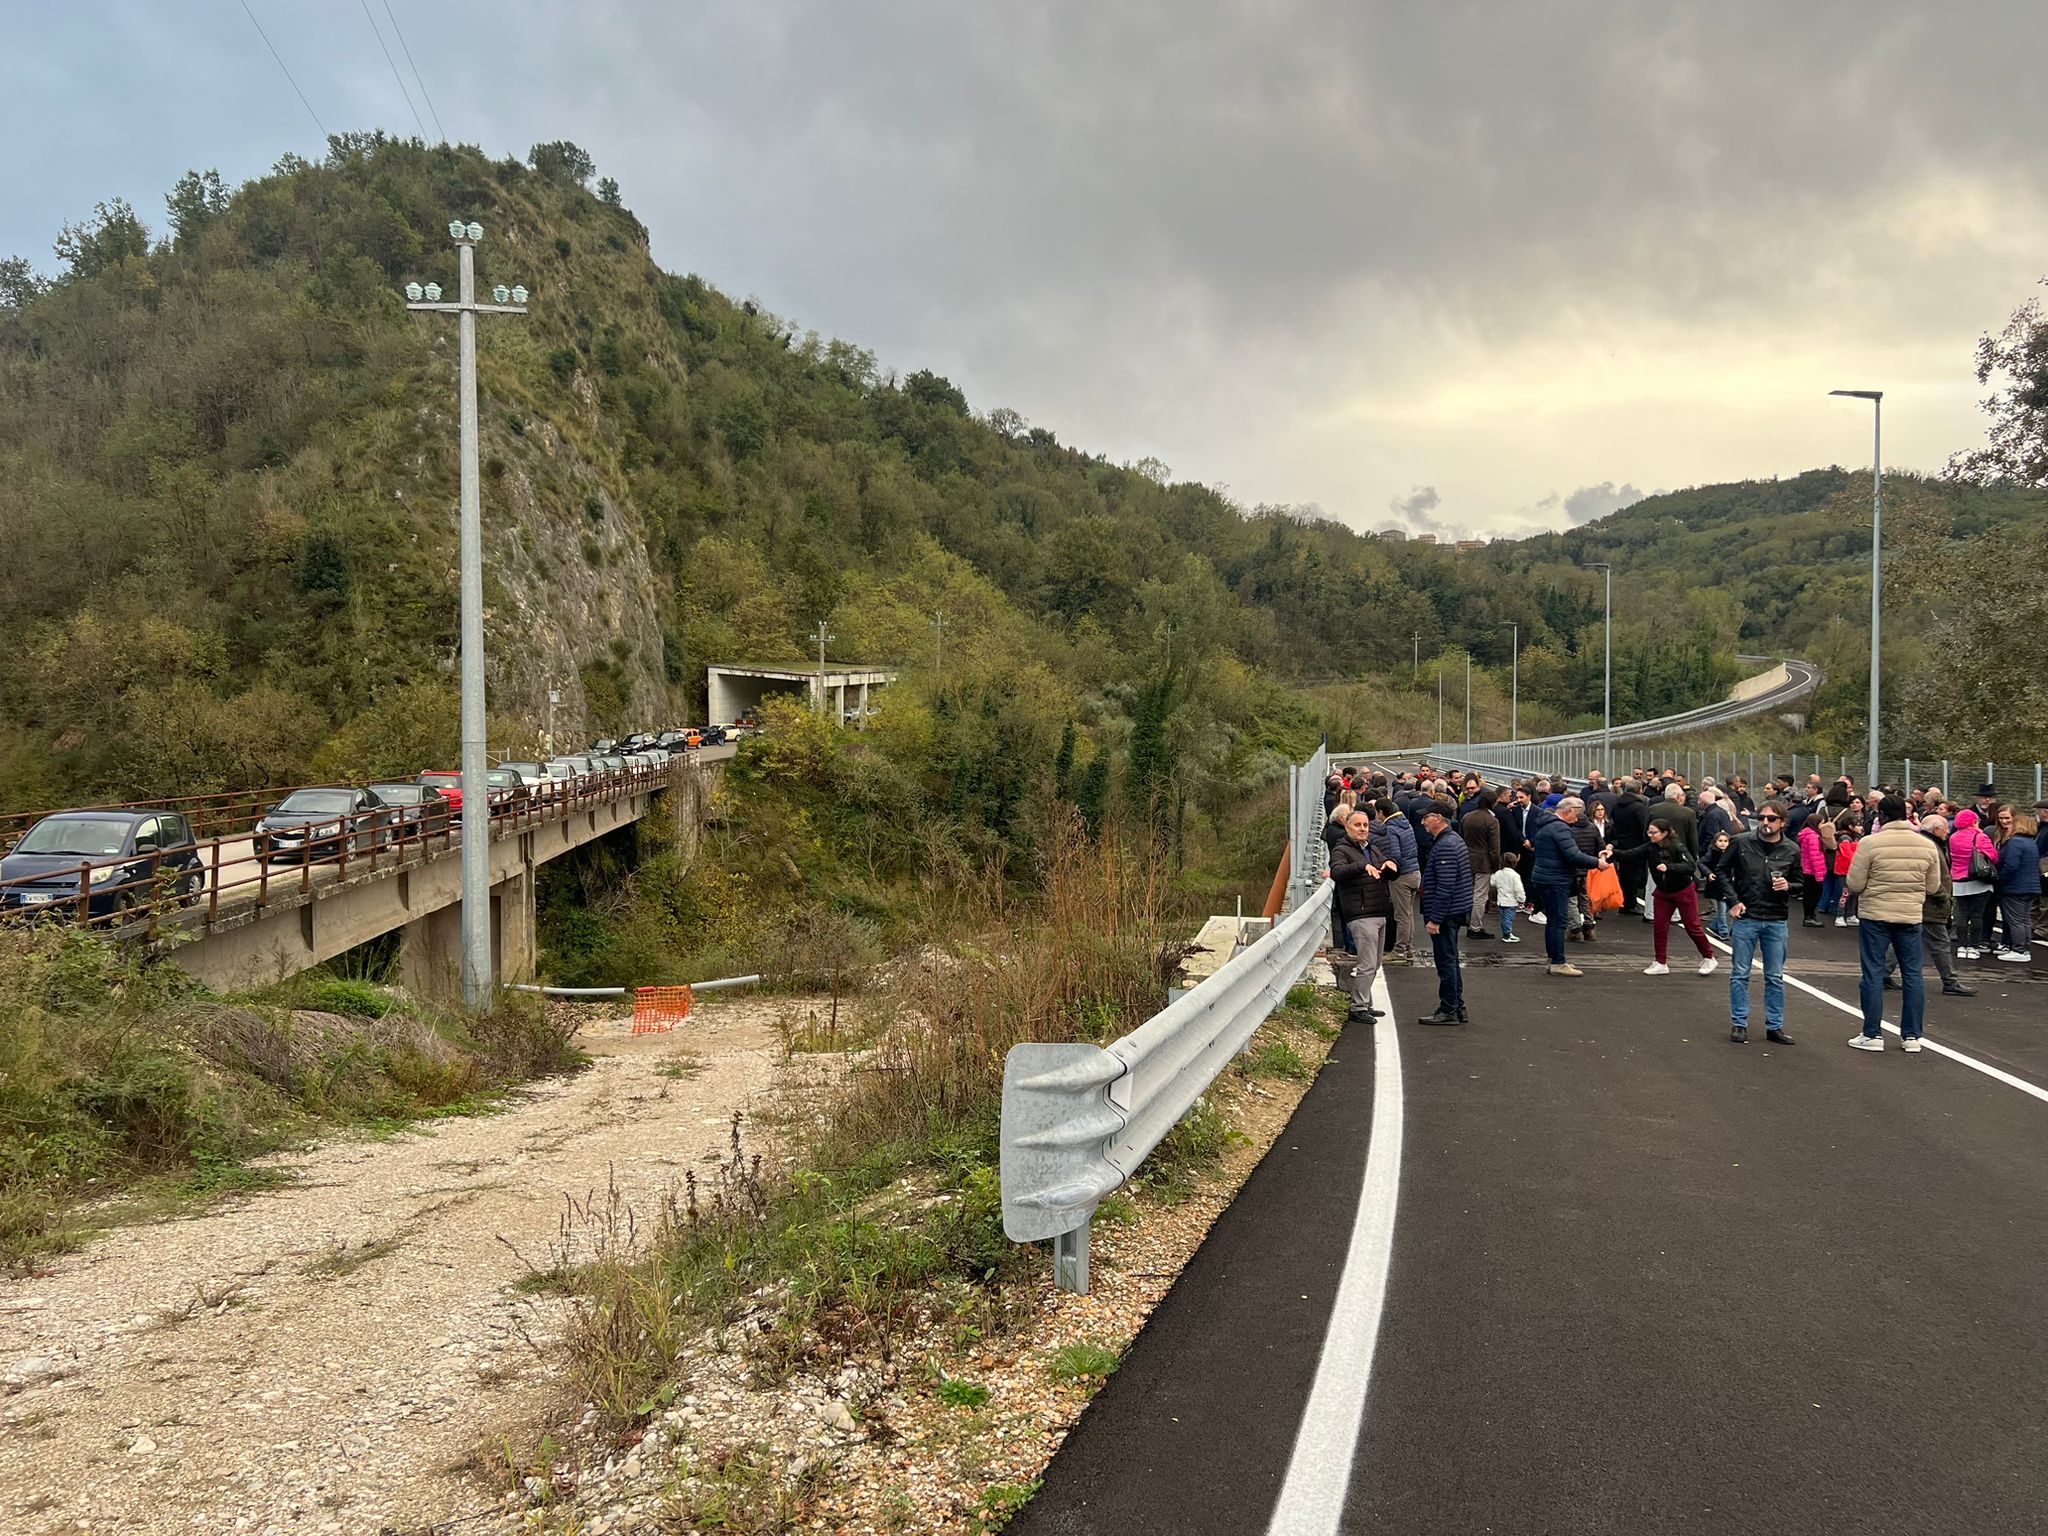 Castelpoto, inaugurata nuova strada provinciale 151 “Portelle”